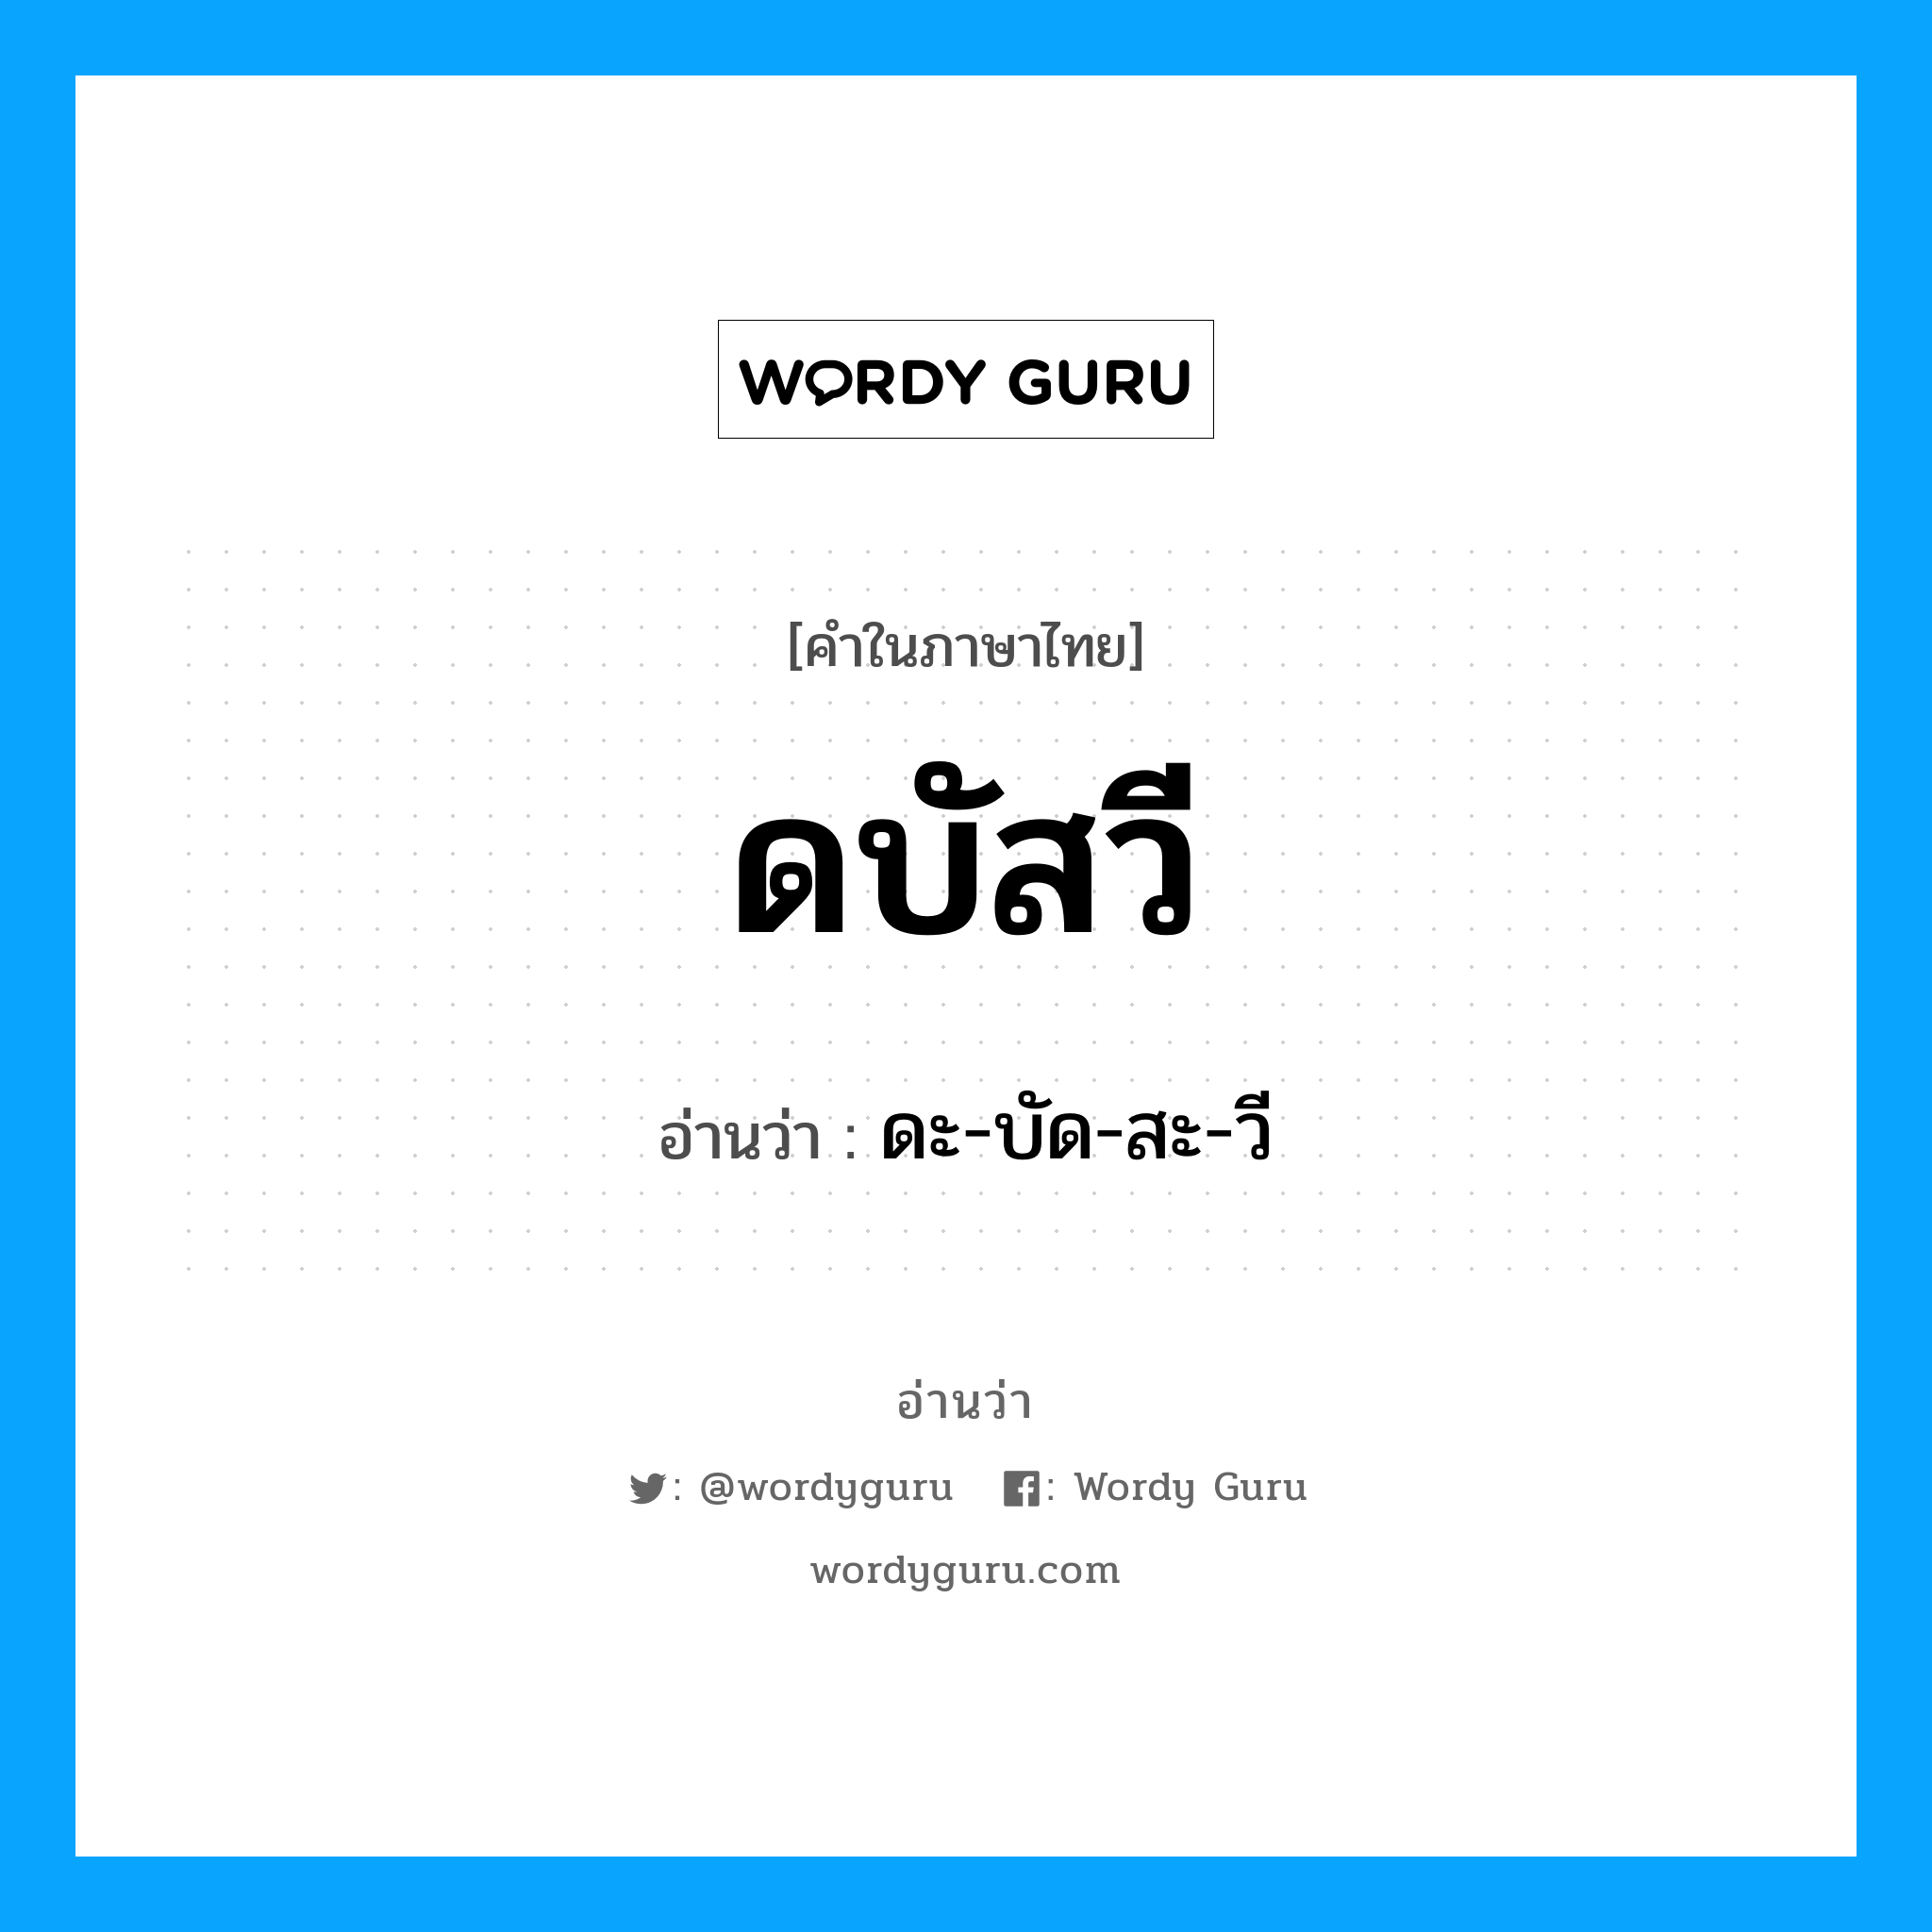 ดะ-บัด-สะ-วี เป็นคำอ่านของคำไหน?, คำในภาษาไทย ดะ-บัด-สะ-วี อ่านว่า ดบัสวี